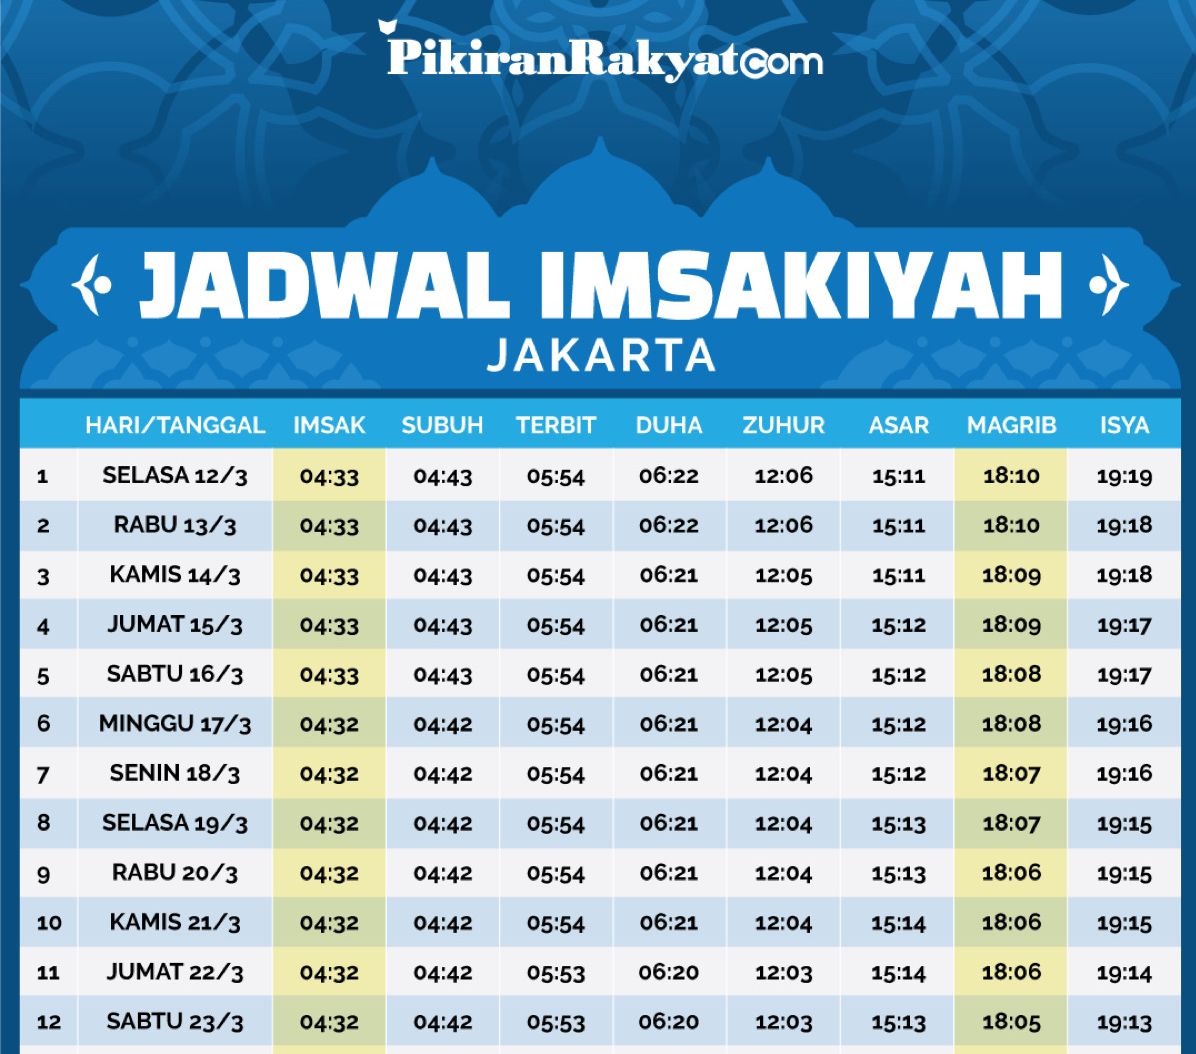 Download jadwal imsak untuk wilayah Jakarta dan sekitarnya